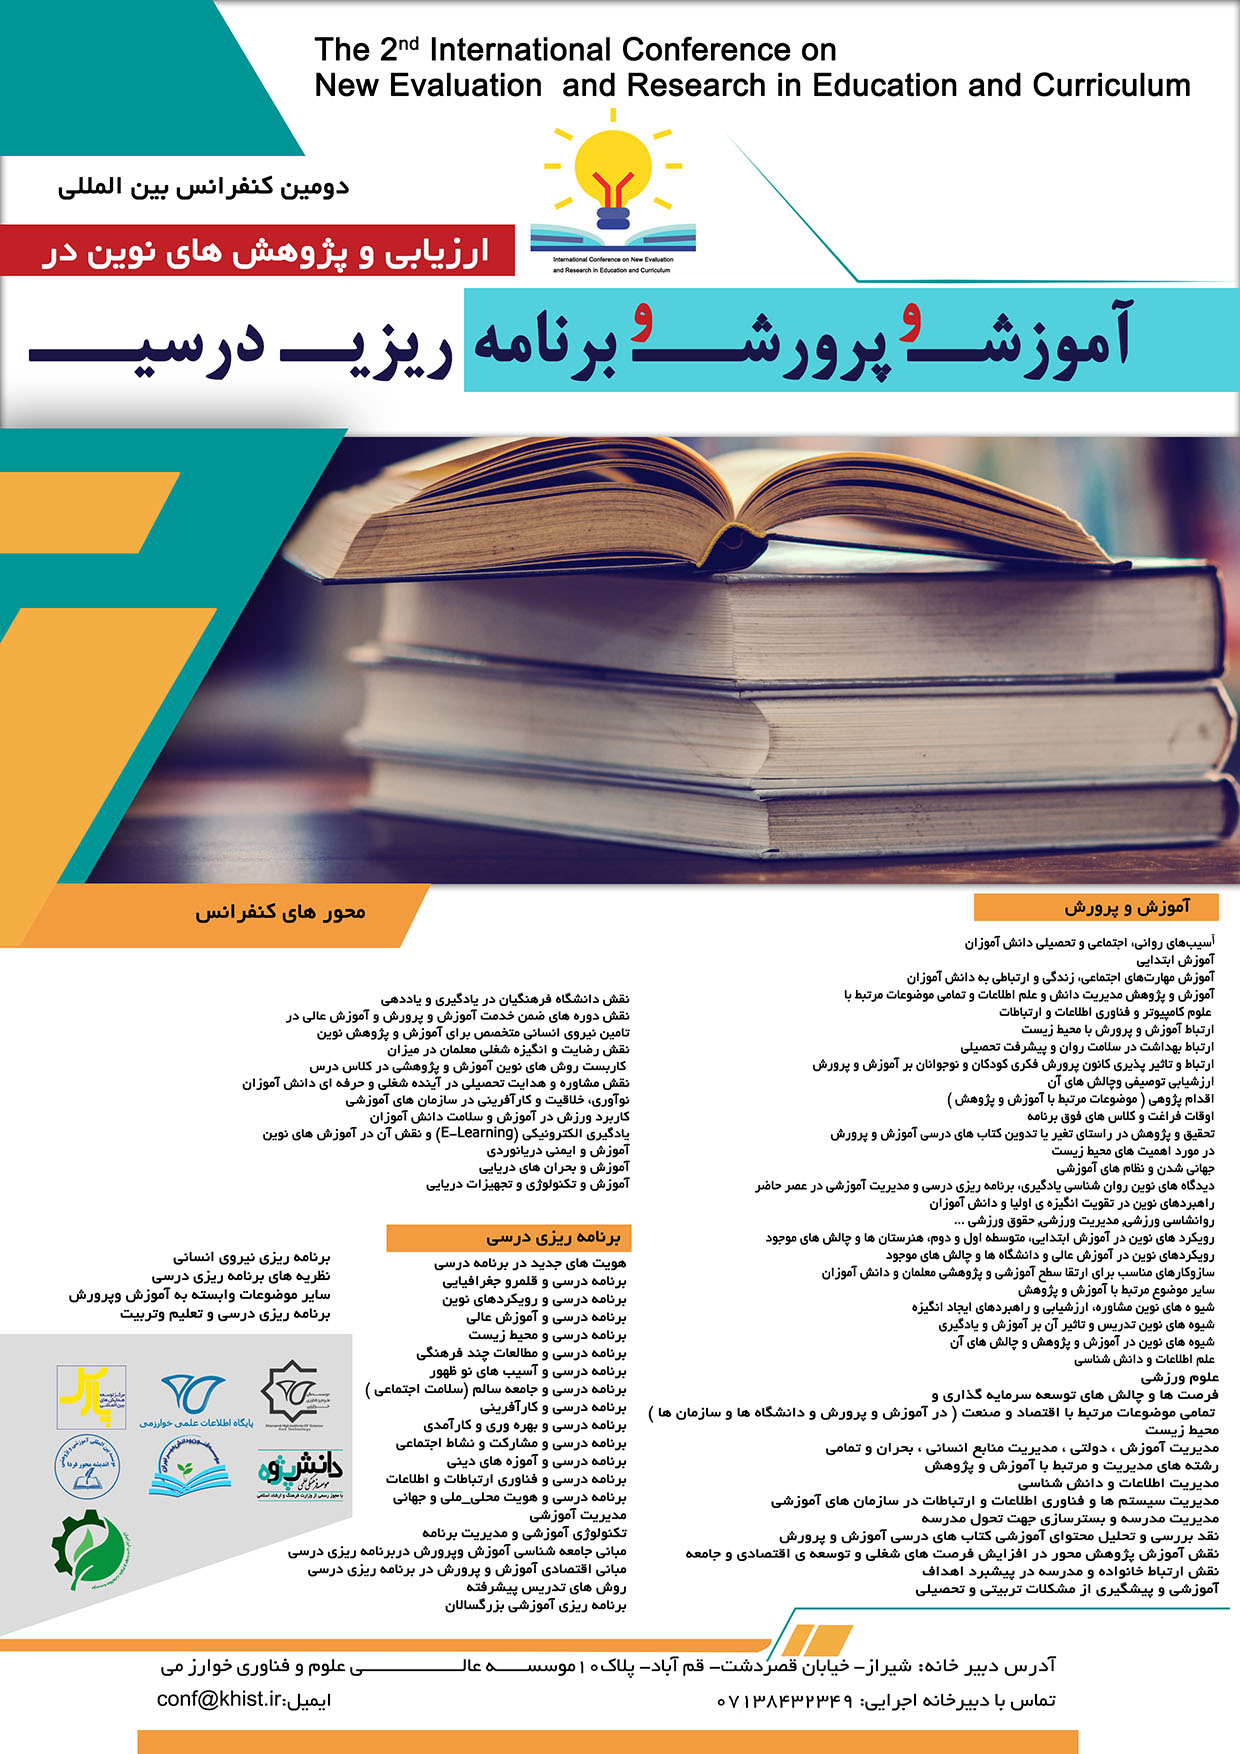 پوستر دومین کنفرانس بین المللی ارزیابی و پژوهش های نوین درآموزش و پرورش و برنامه ریزی درسی